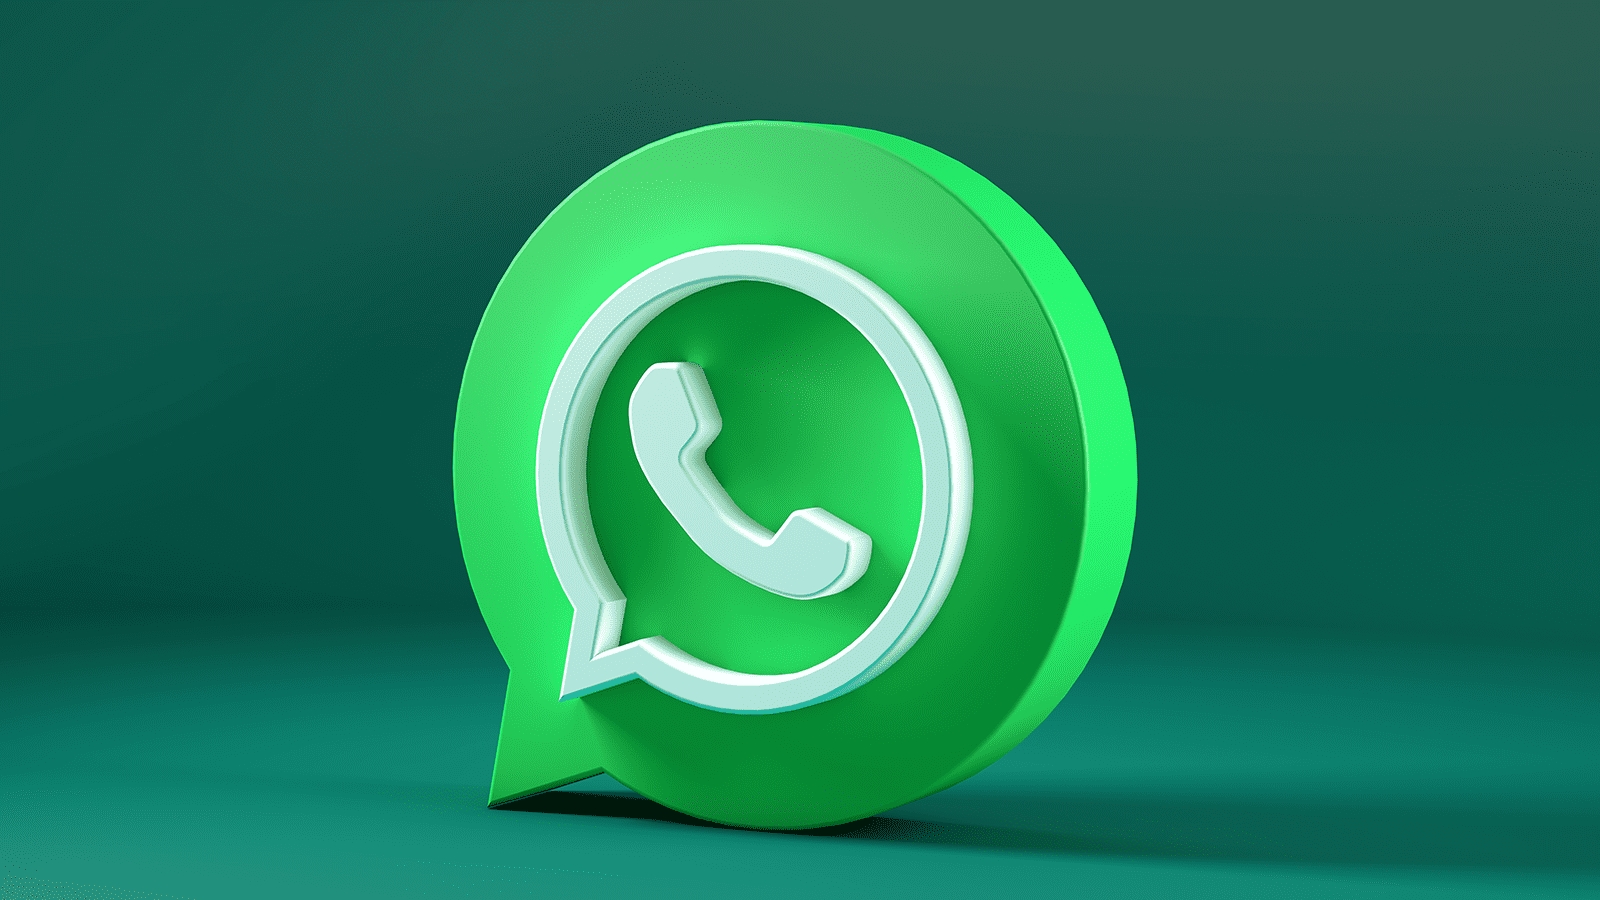 Logo do WhatsApp no formato 3D sobre um fundo verde.